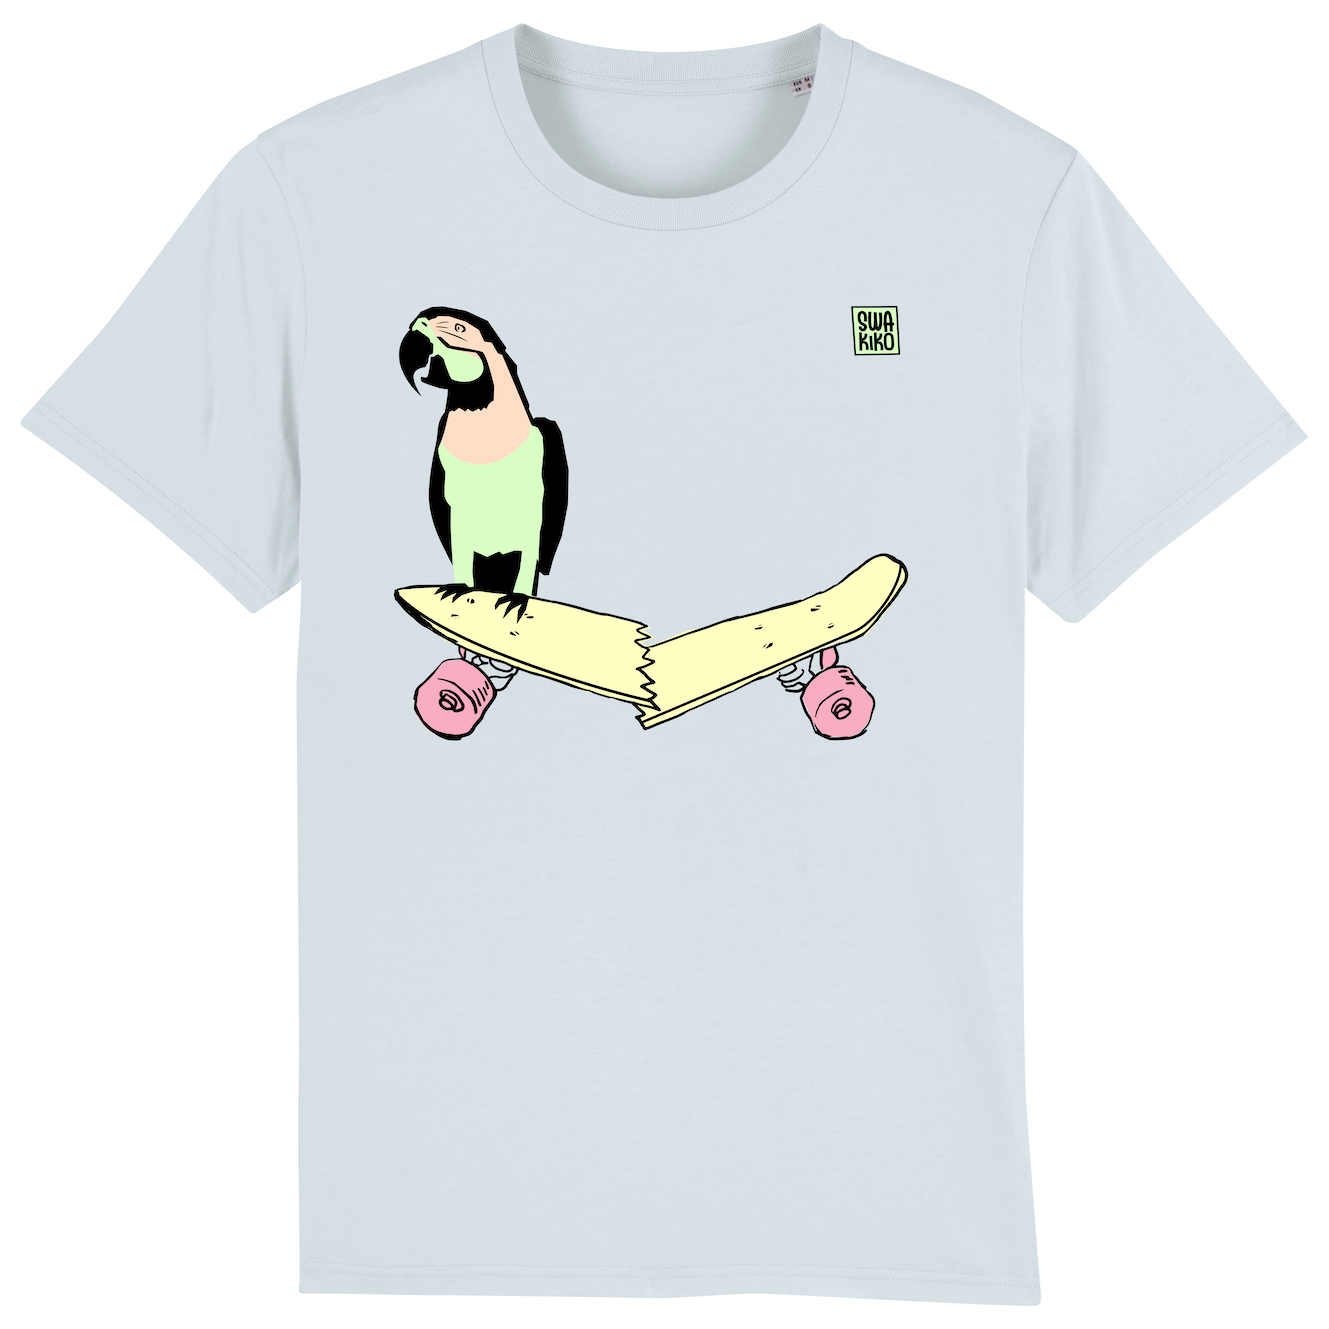 Skate T-shirt, parrot on skateboard, men, blue